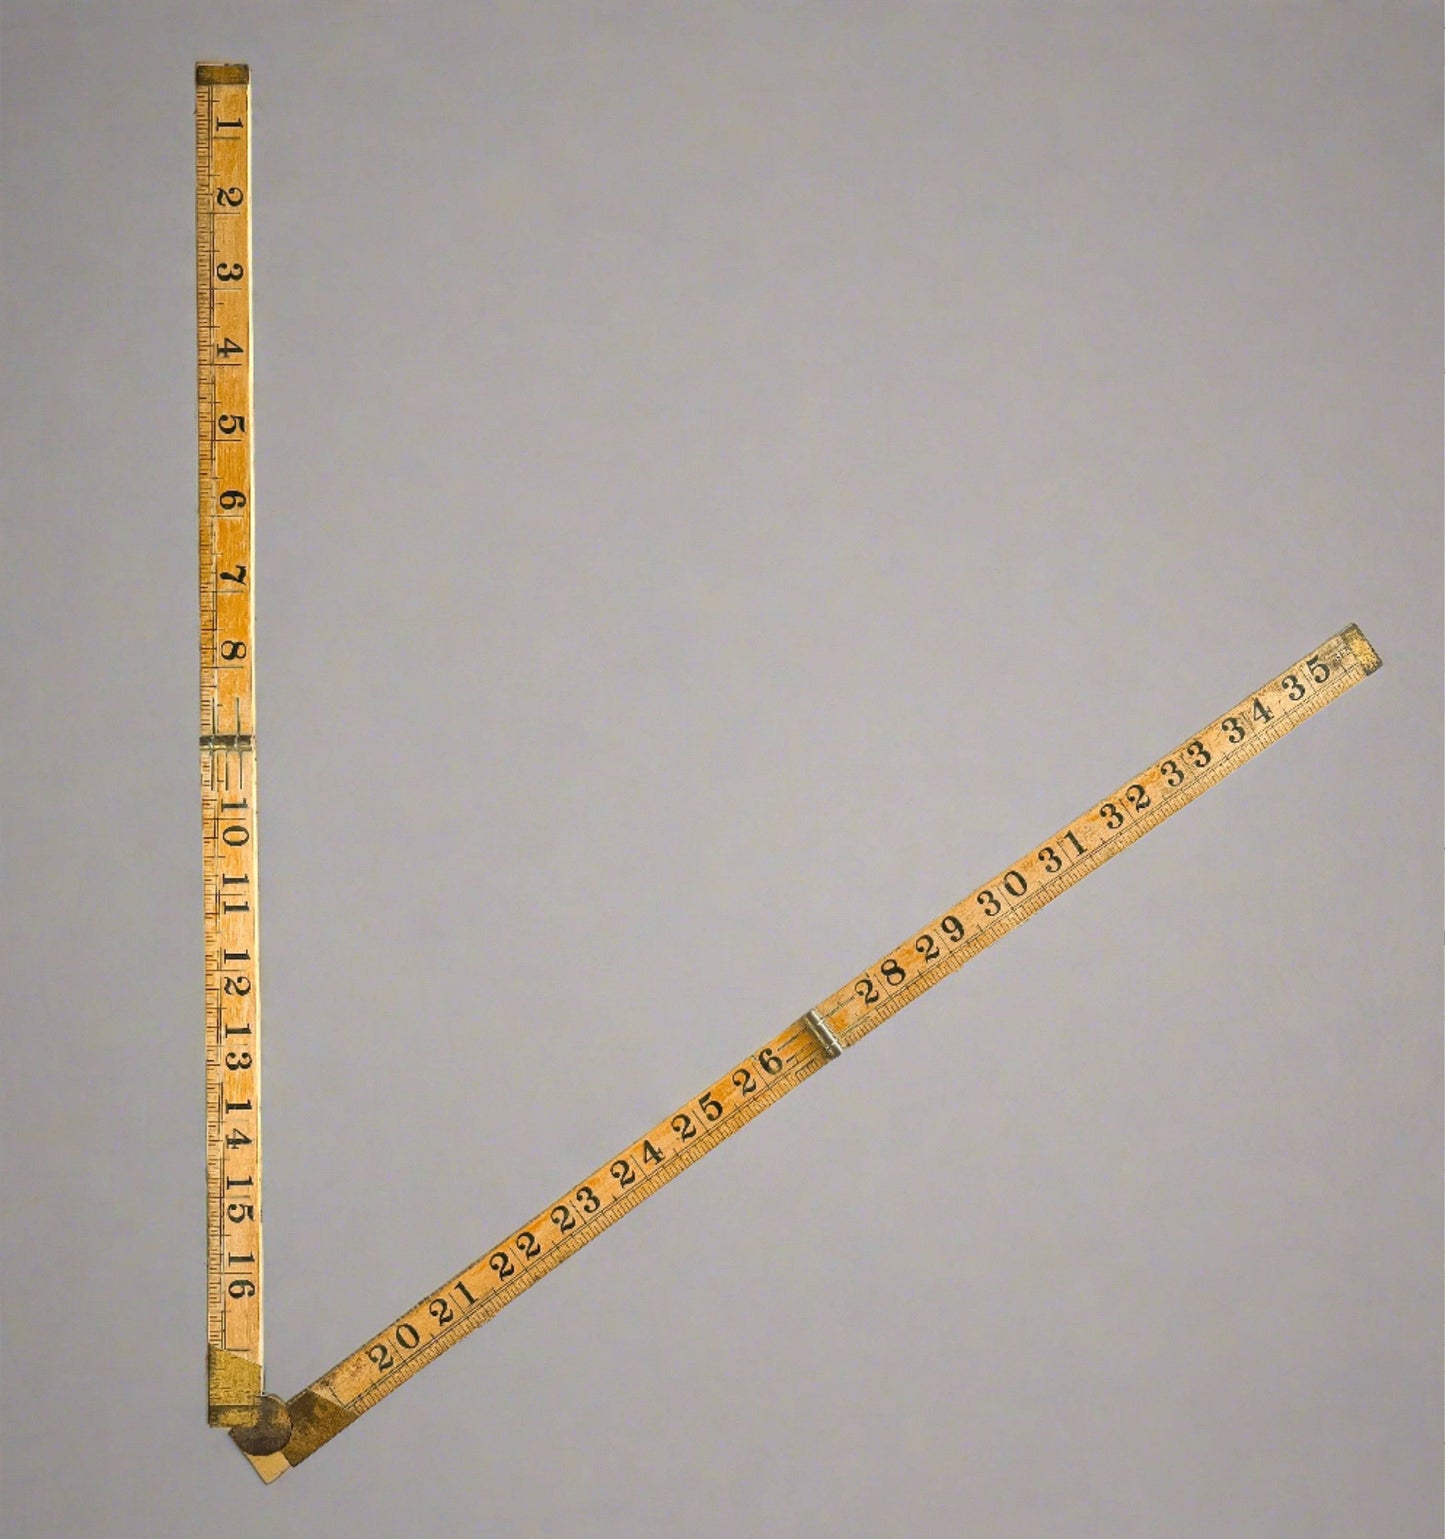 Vintage Folding Carpenter's Ruler - Articulated Design for Precision Measurement - SOSC Home